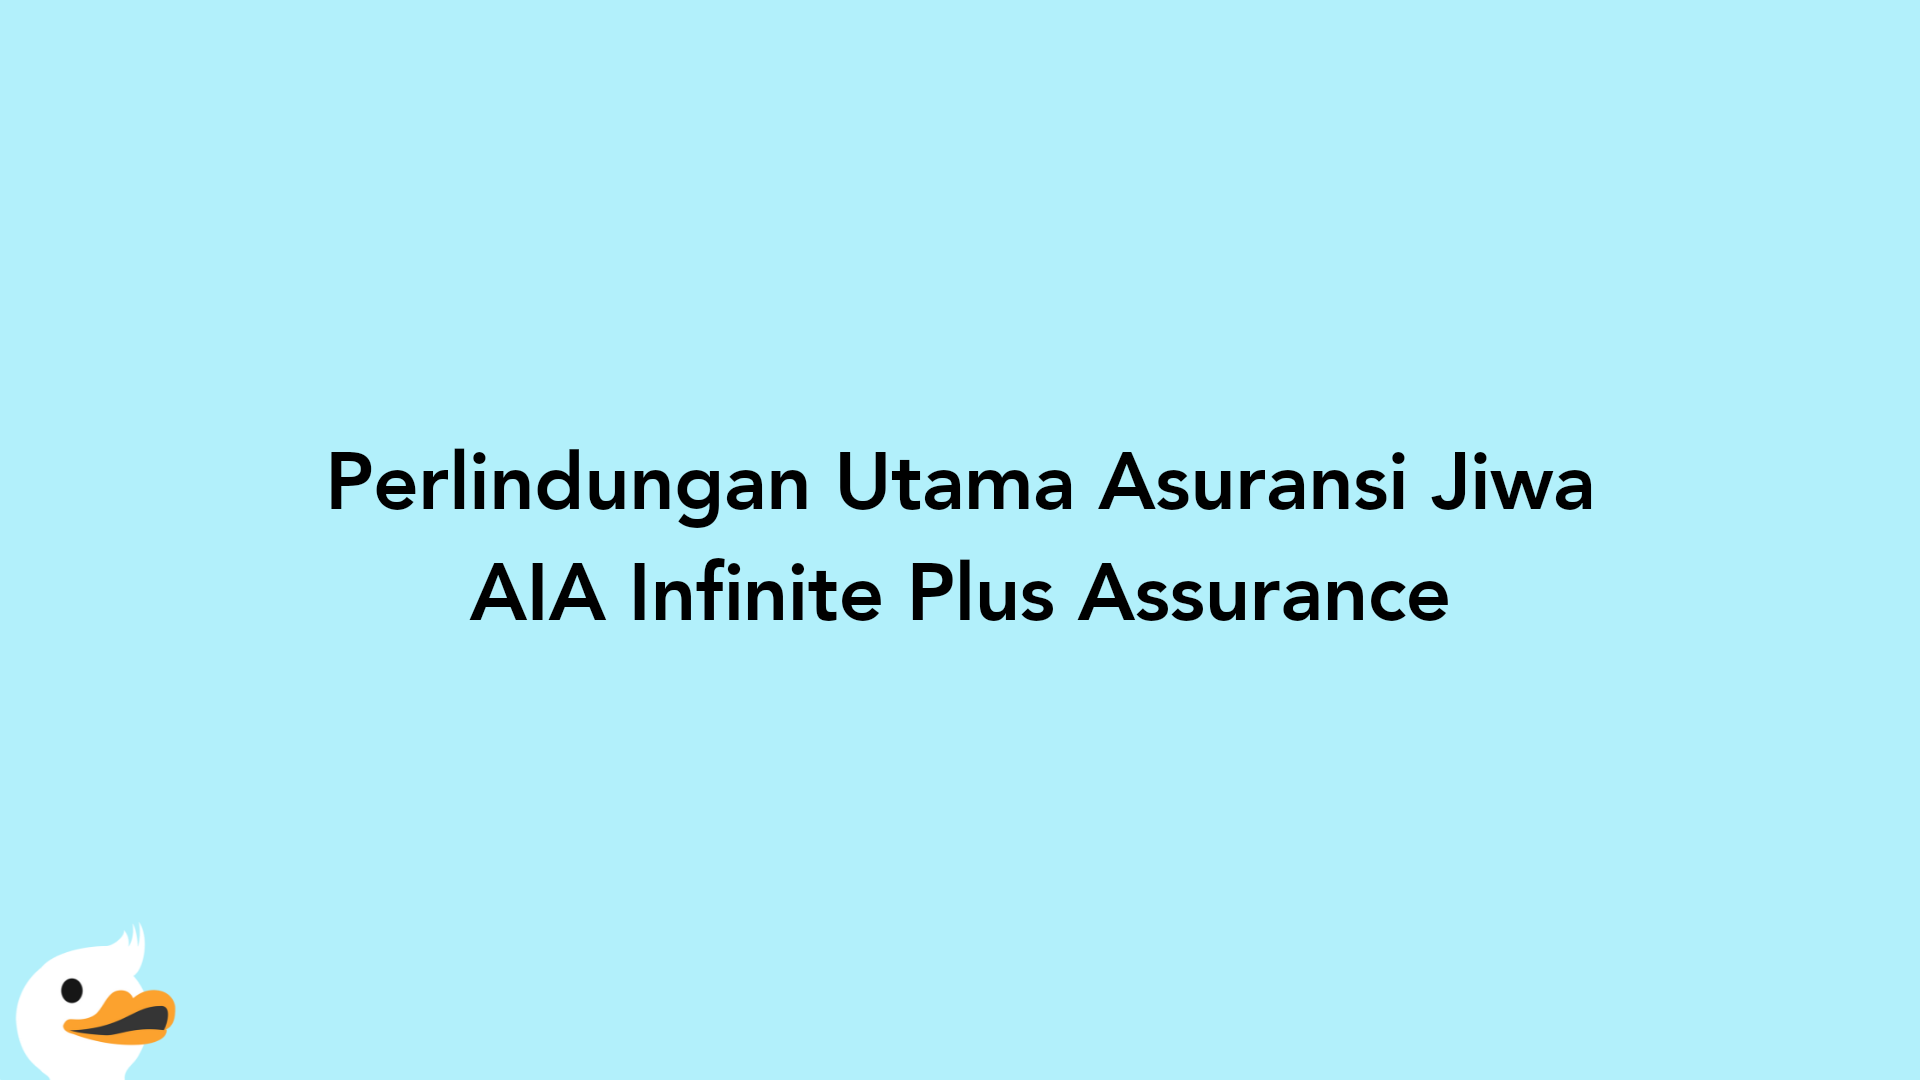 Perlindungan Utama Asuransi Jiwa AIA Infinite Plus Assurance